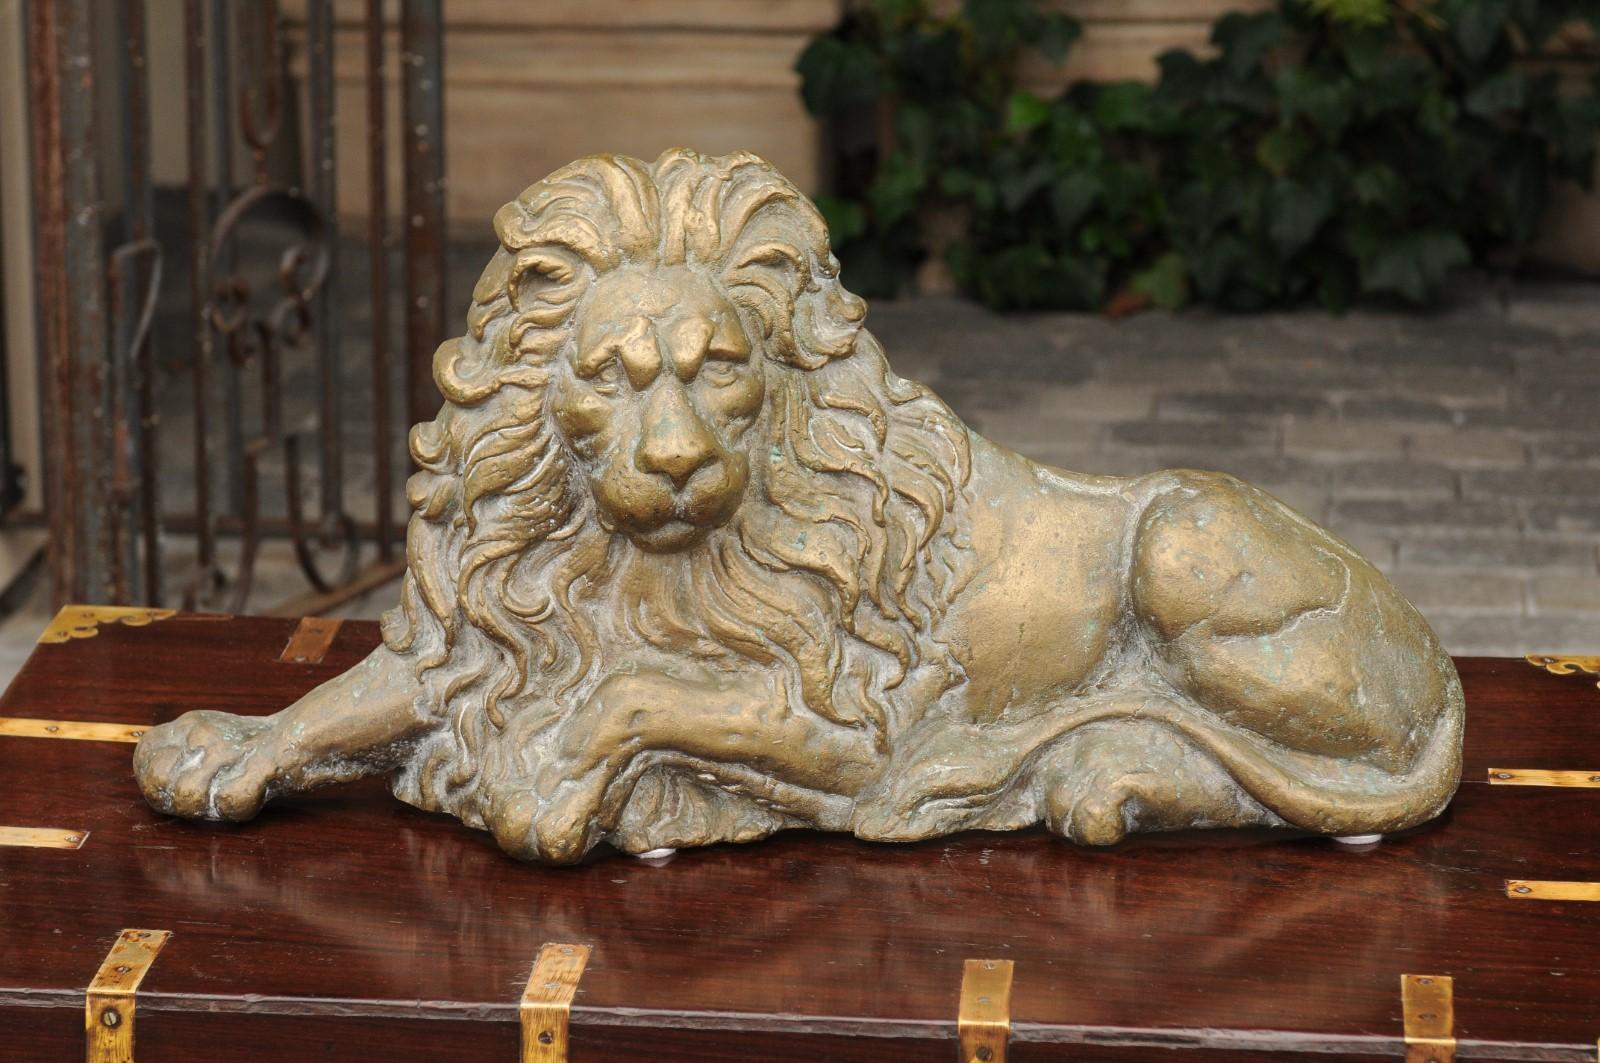 Sculpture anglaise en laiton de la fin du XIXe siècle, représentant un lion en position couchée. Né dans les dernières années du XIXe siècle, ce lion anglais en laiton dégage un indéniable air de sagesse et de force. En nous regardant directement,